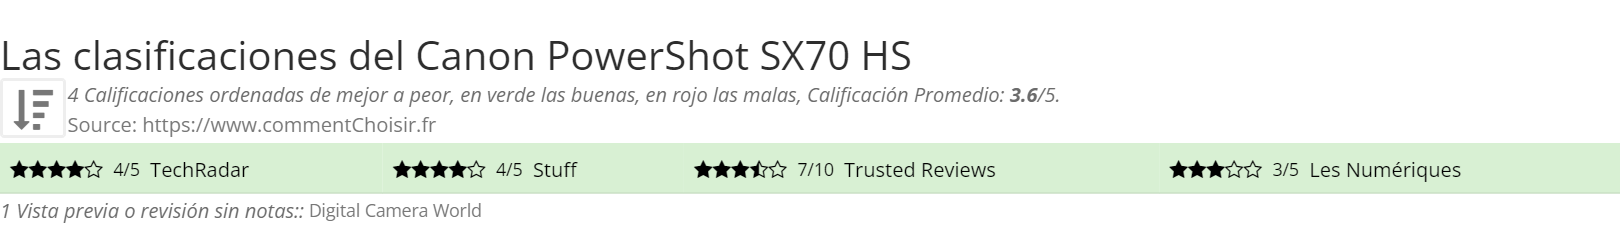 Ratings Canon PowerShot SX70 HS